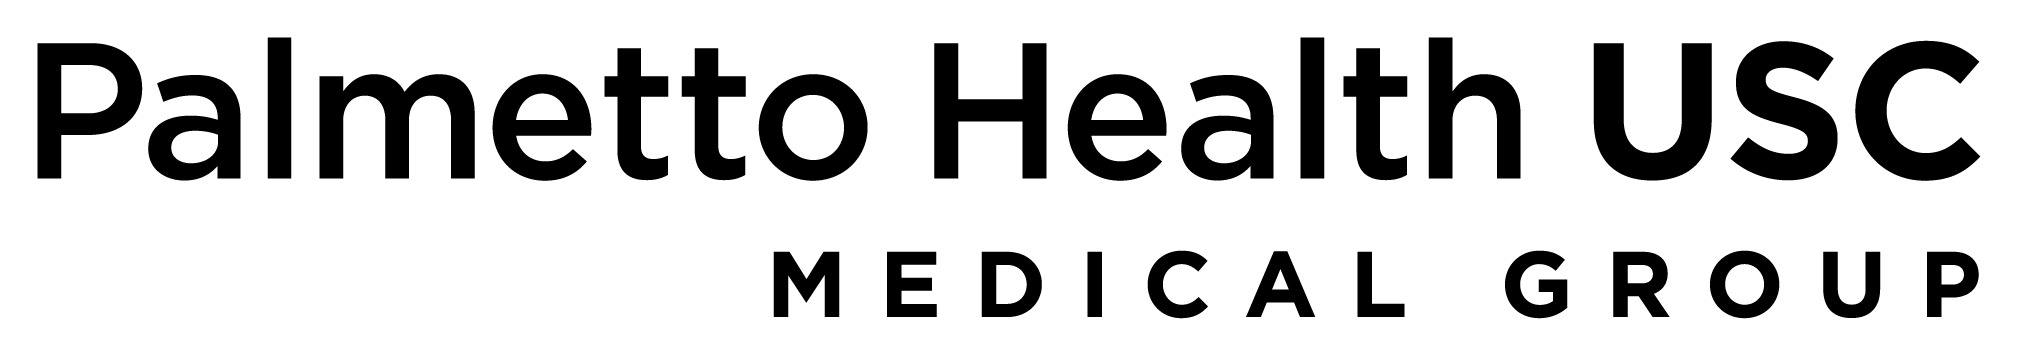 Black and White Medical Logo - Logos